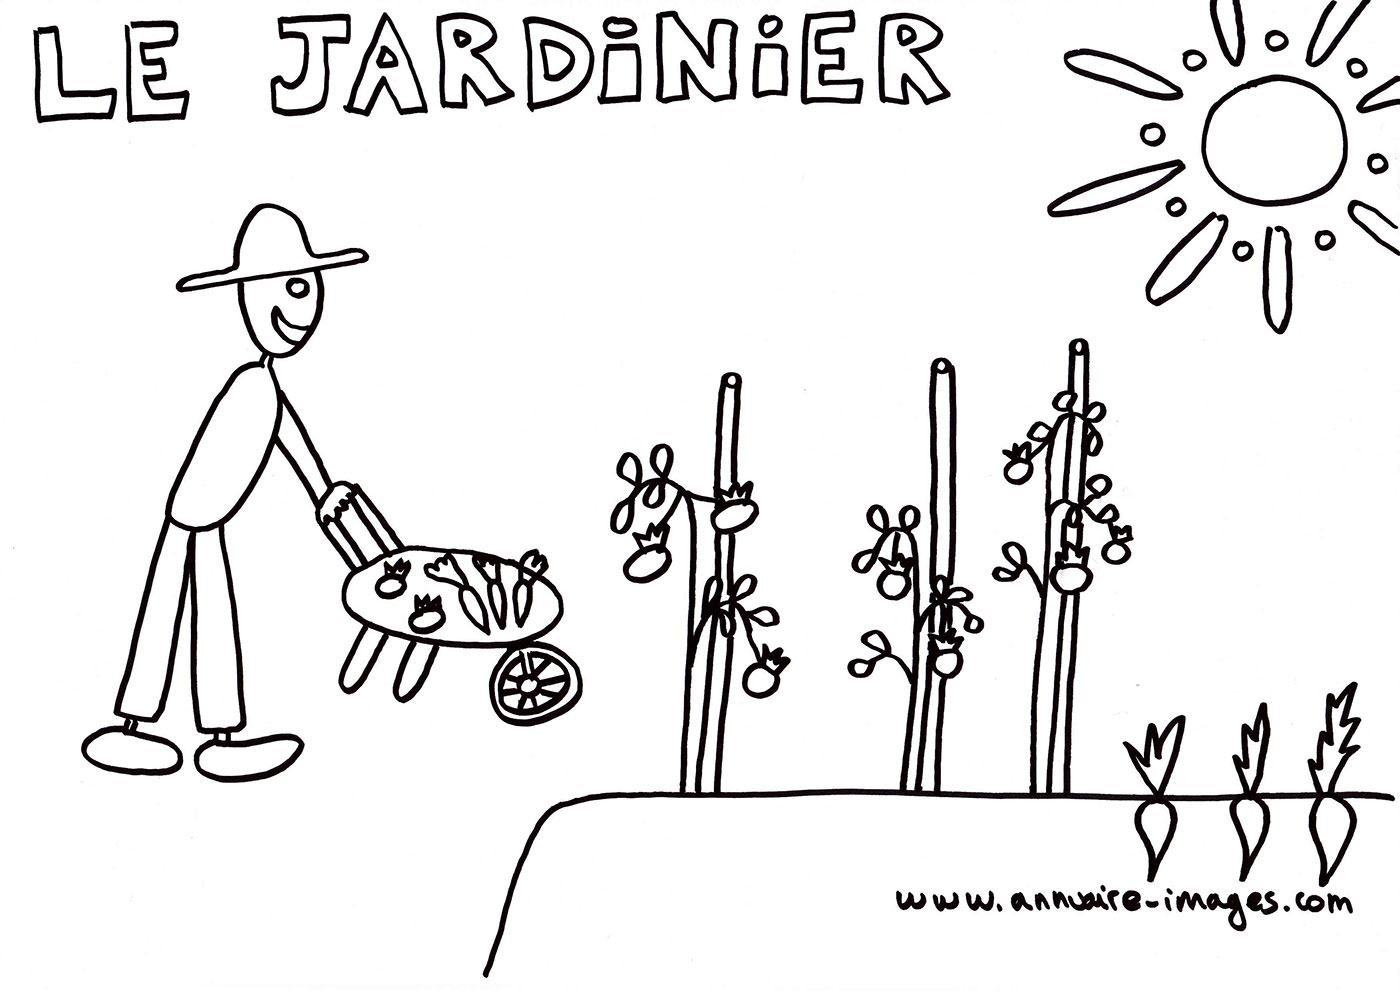 Jardinier dans son jardin poussant sa brouette